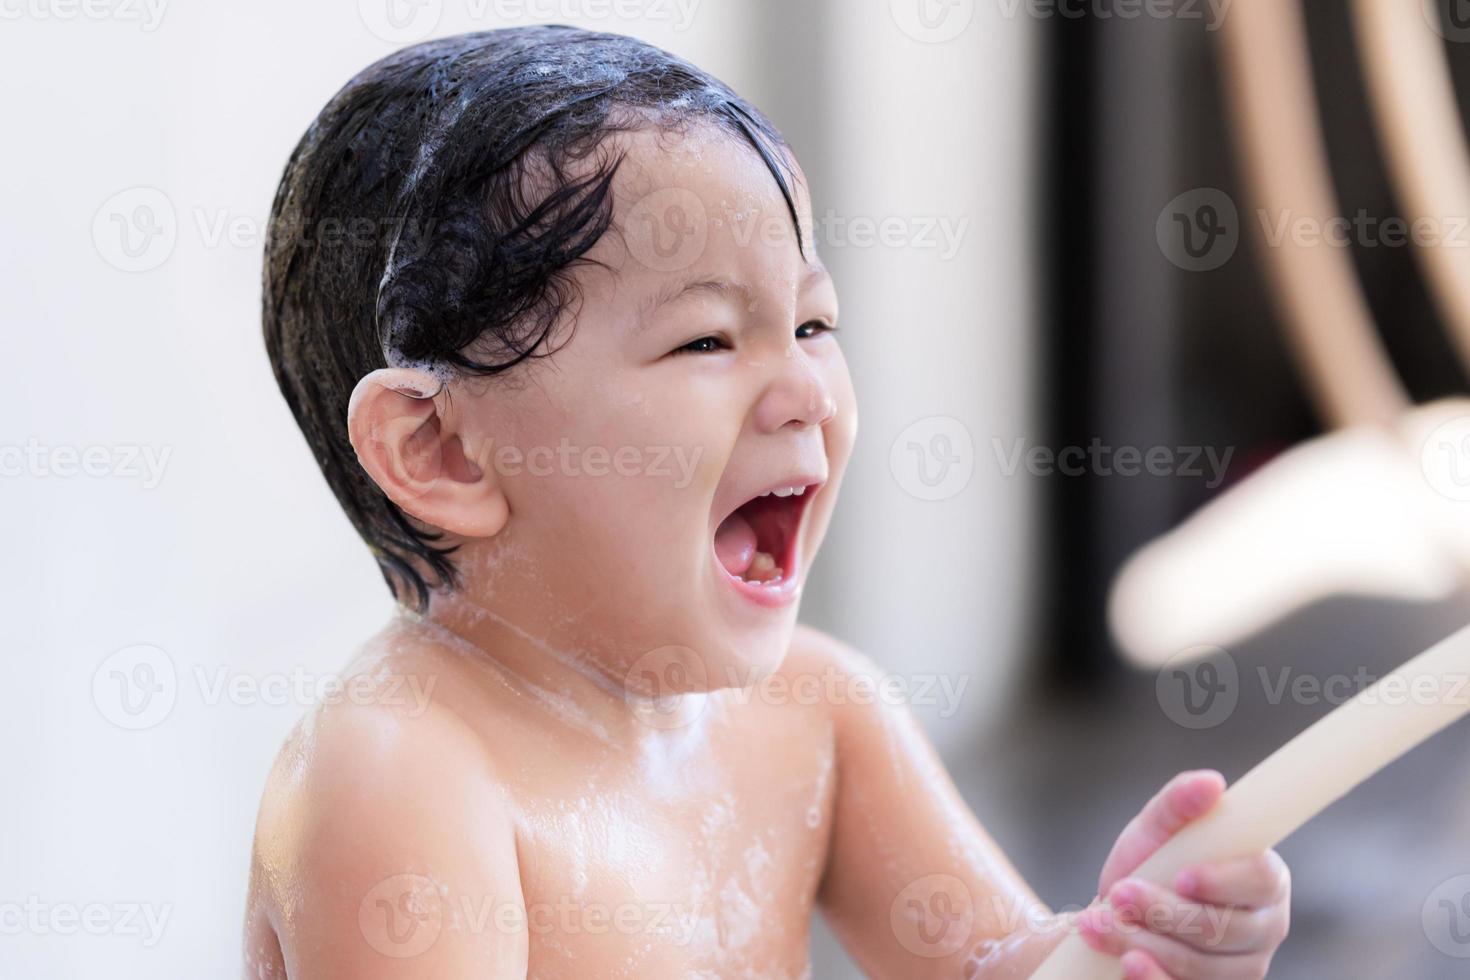 il ragazzo prescolare asiatico sveglio sta ridendo. bambino che si diverte a fare il bagno e lavare i capelli. ragazzino dolce sorridente allegro. le sue mani che tengono il cinturino in gomma per rilasciare acqua pulita. il figlio ha 2 anni. foto